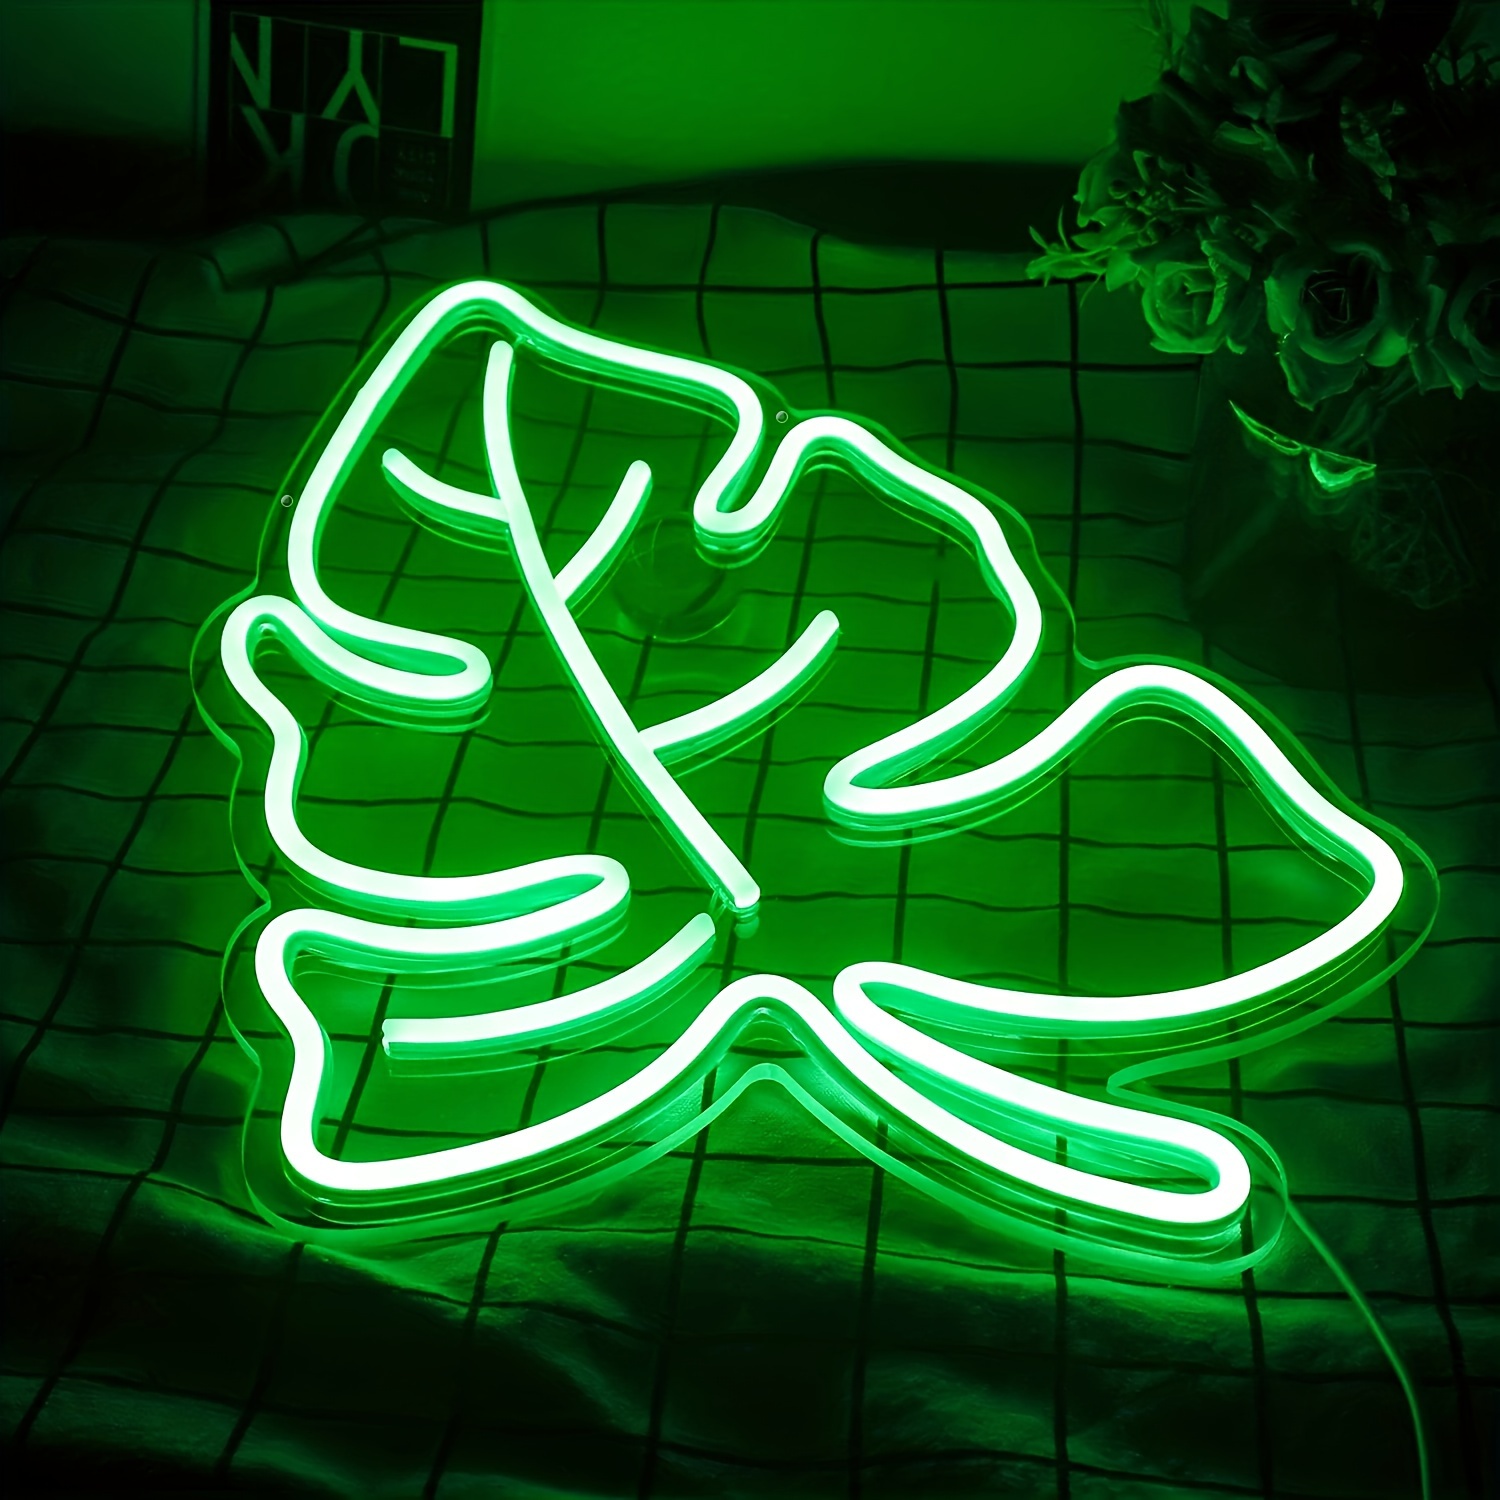 Willkommen im Dschungel Neon Schild Benutzerdefinierte Neon Licht  Benutzerdefinierte Neon Schild Grün LED Licht Zeichen Halloween Neon Schild  Halloween Party Dekoration -  Österreich